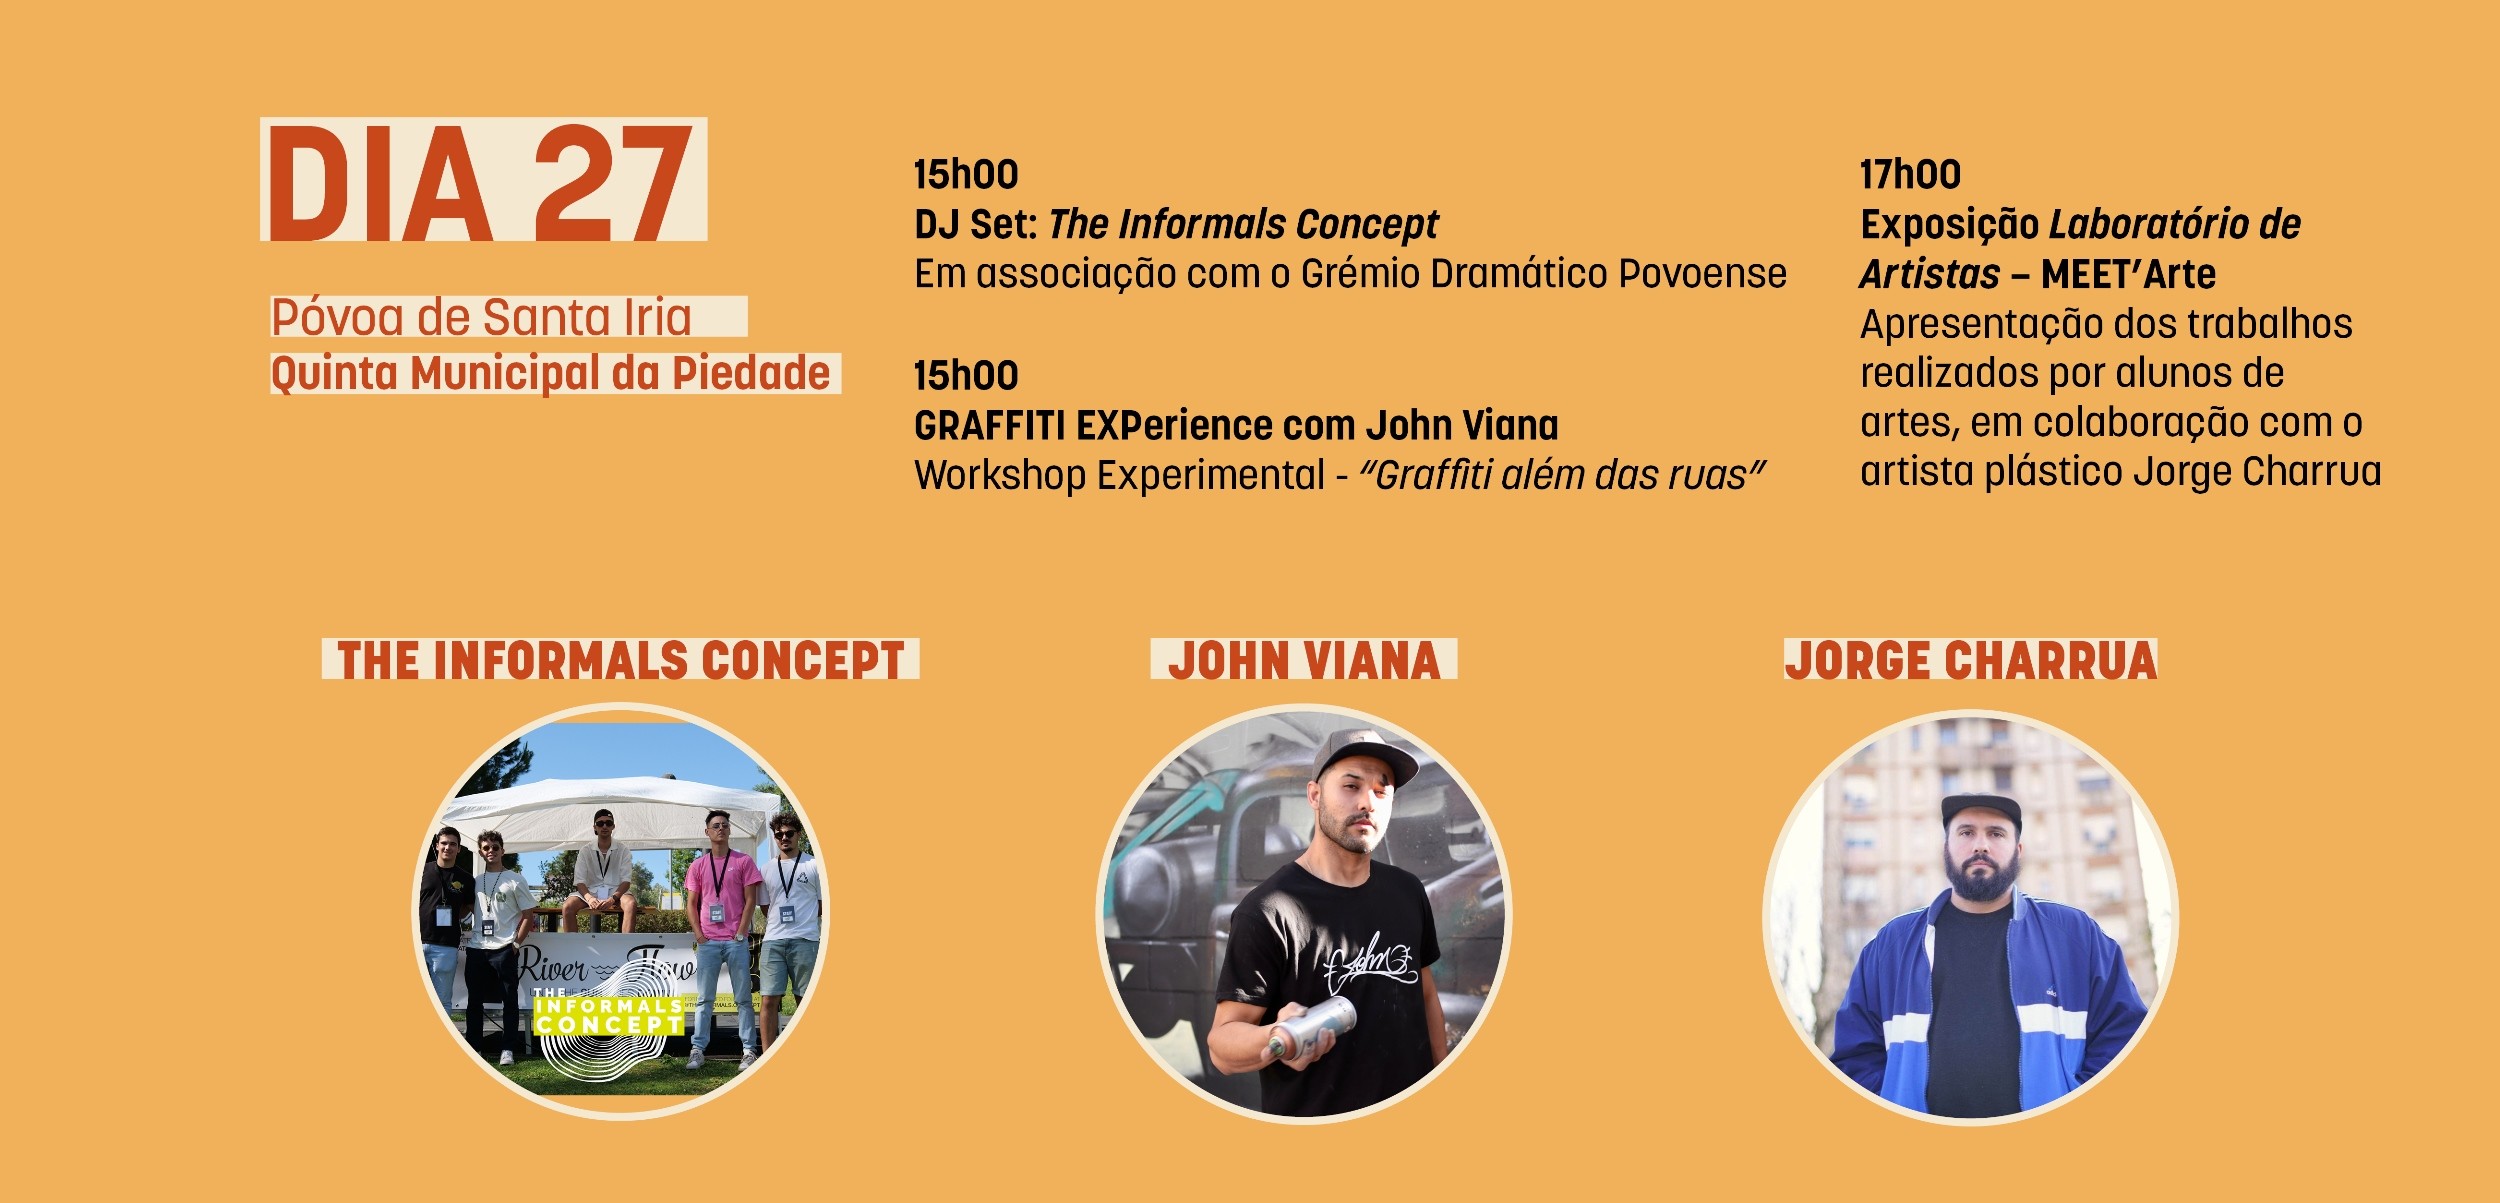 Dia 27 | Póvoa de Santa Iria (Quinta da Piedade) | 15h00 DJ Set: The Informals Concept | 15h00 Gr...